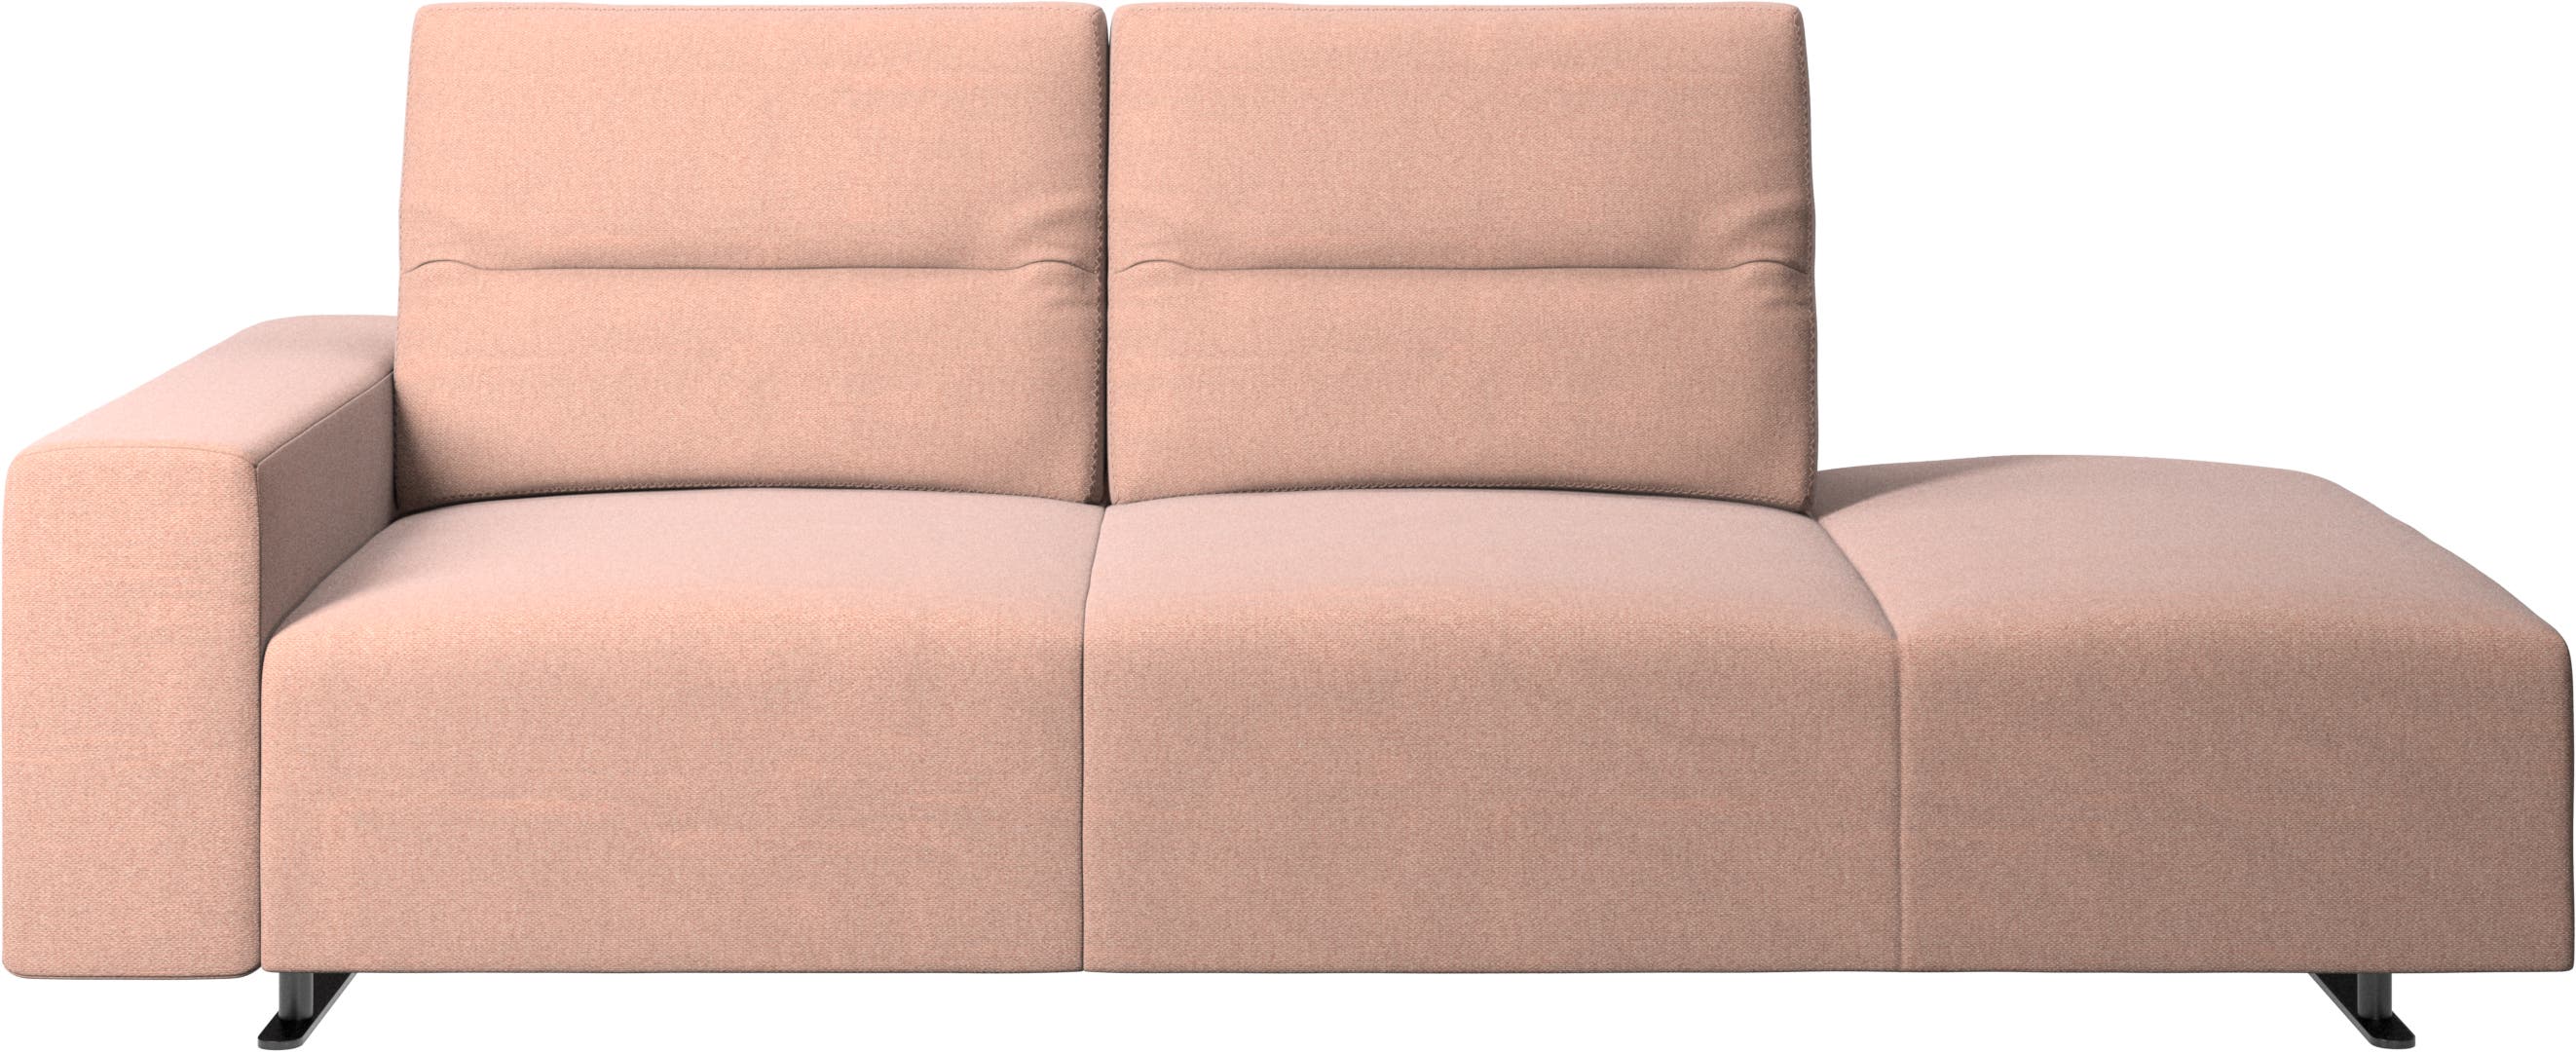 Καναπές Hampton με ρυθμιζόμενη πλάτη και δεξιά μονάδα lounging,  αριστερό μπράτσο